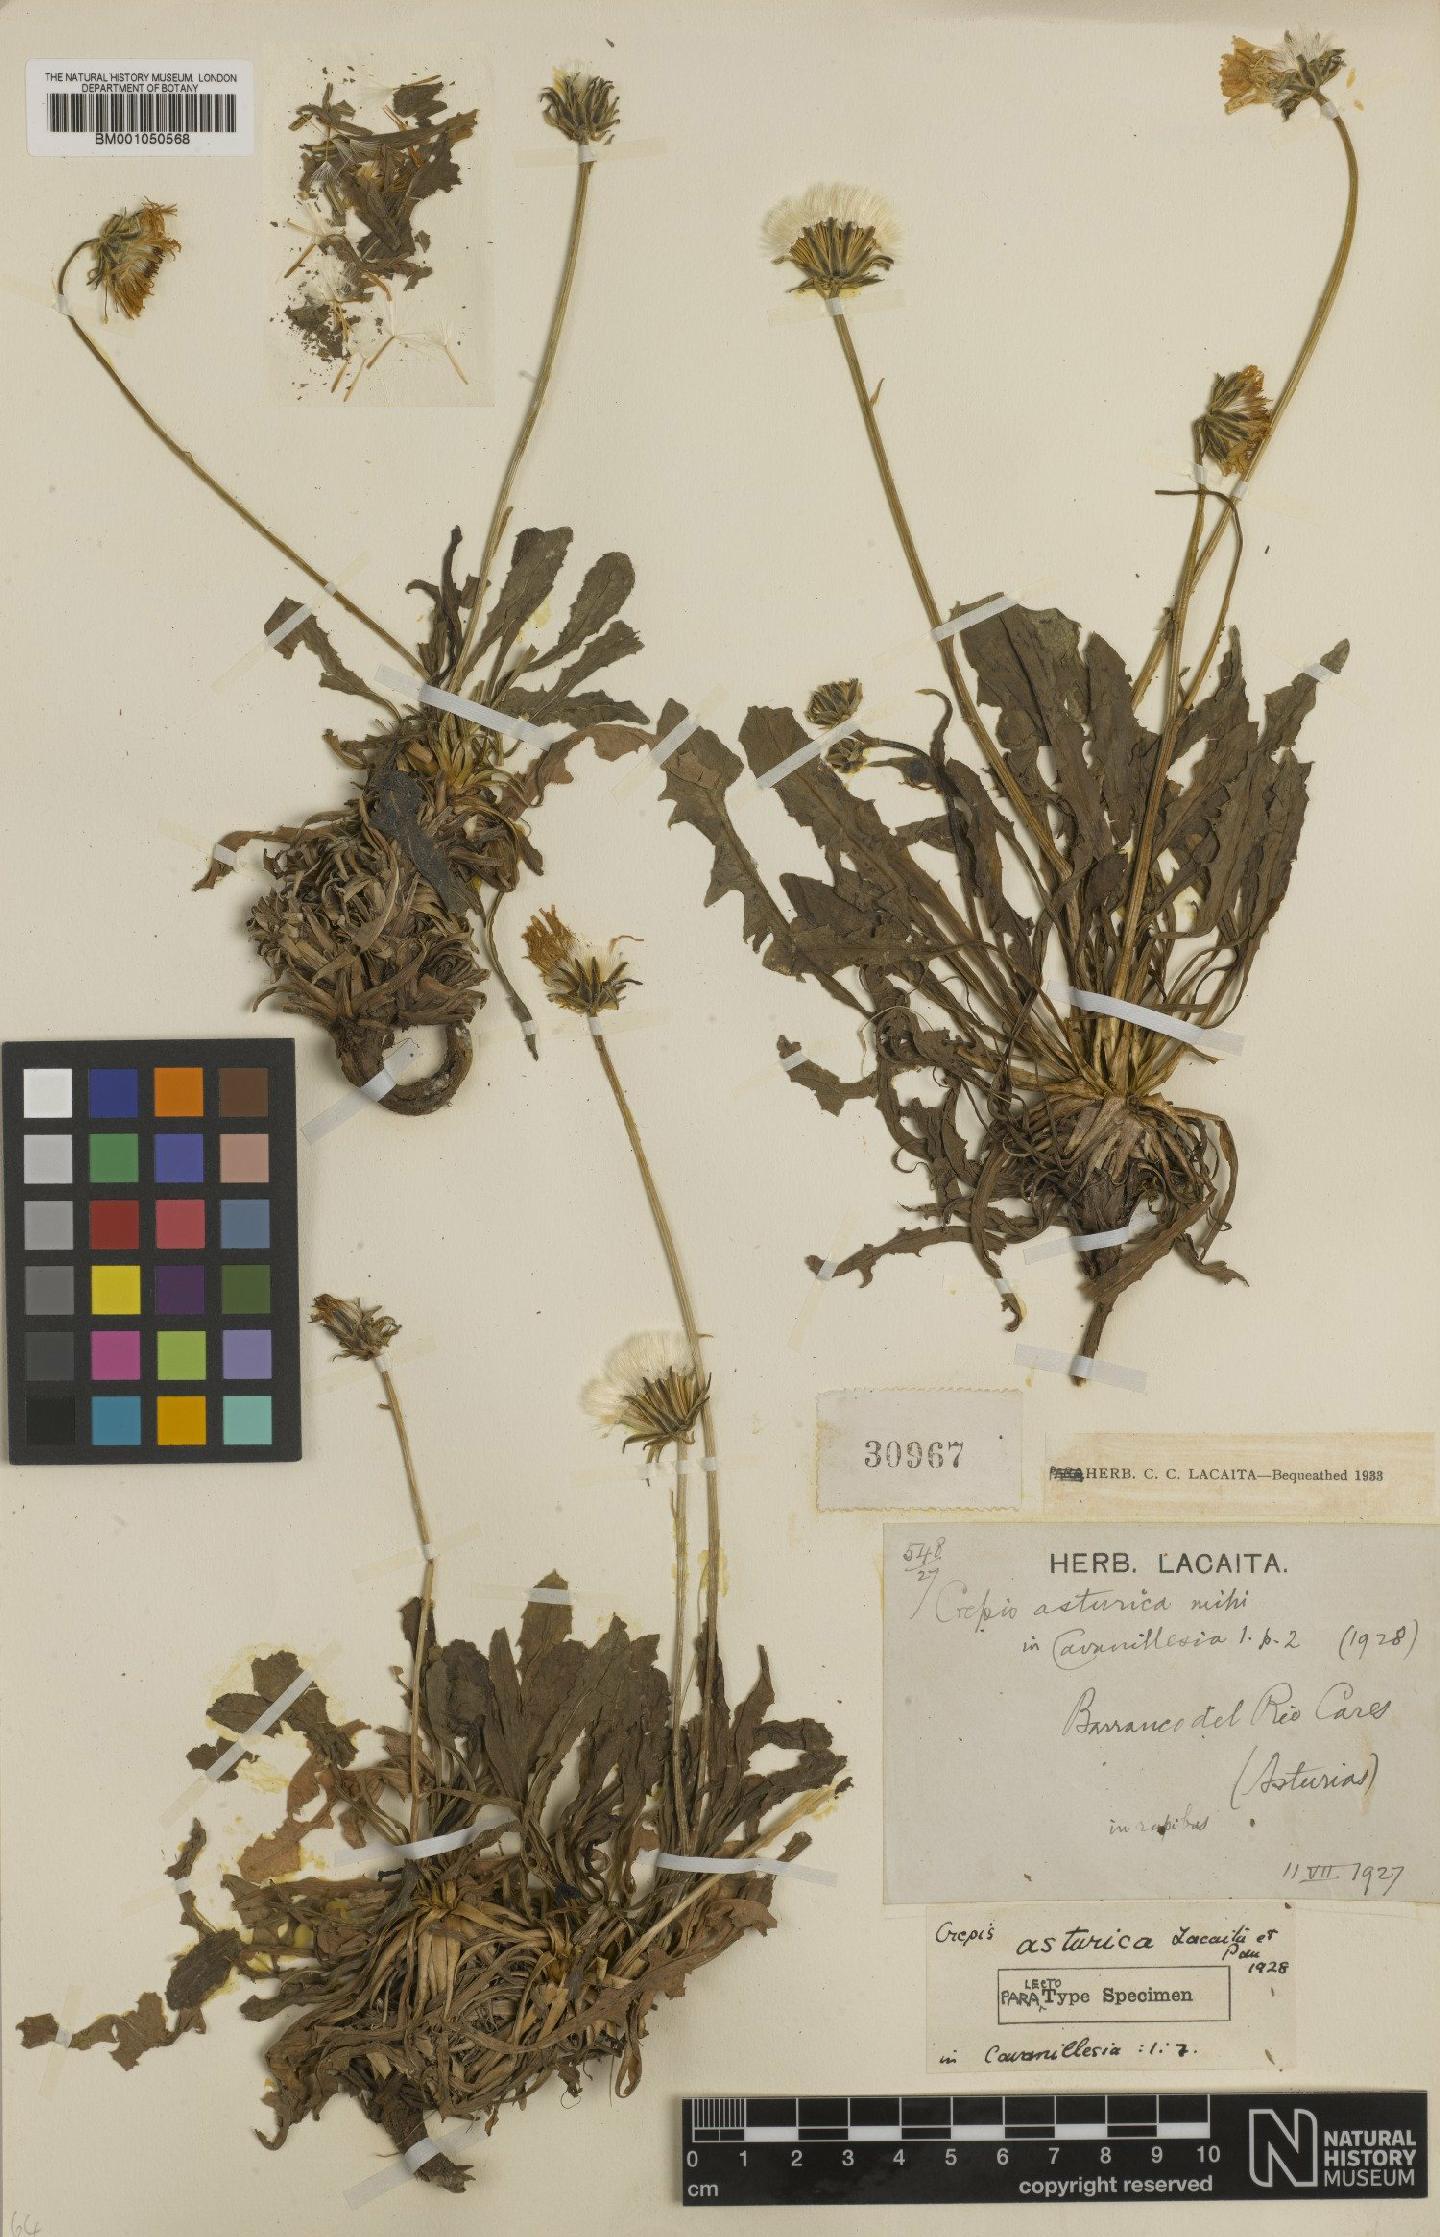 To NHMUK collection (Crepis albida subsp. asturica Babc.; TYPE; NHMUK:ecatalogue:2395787)